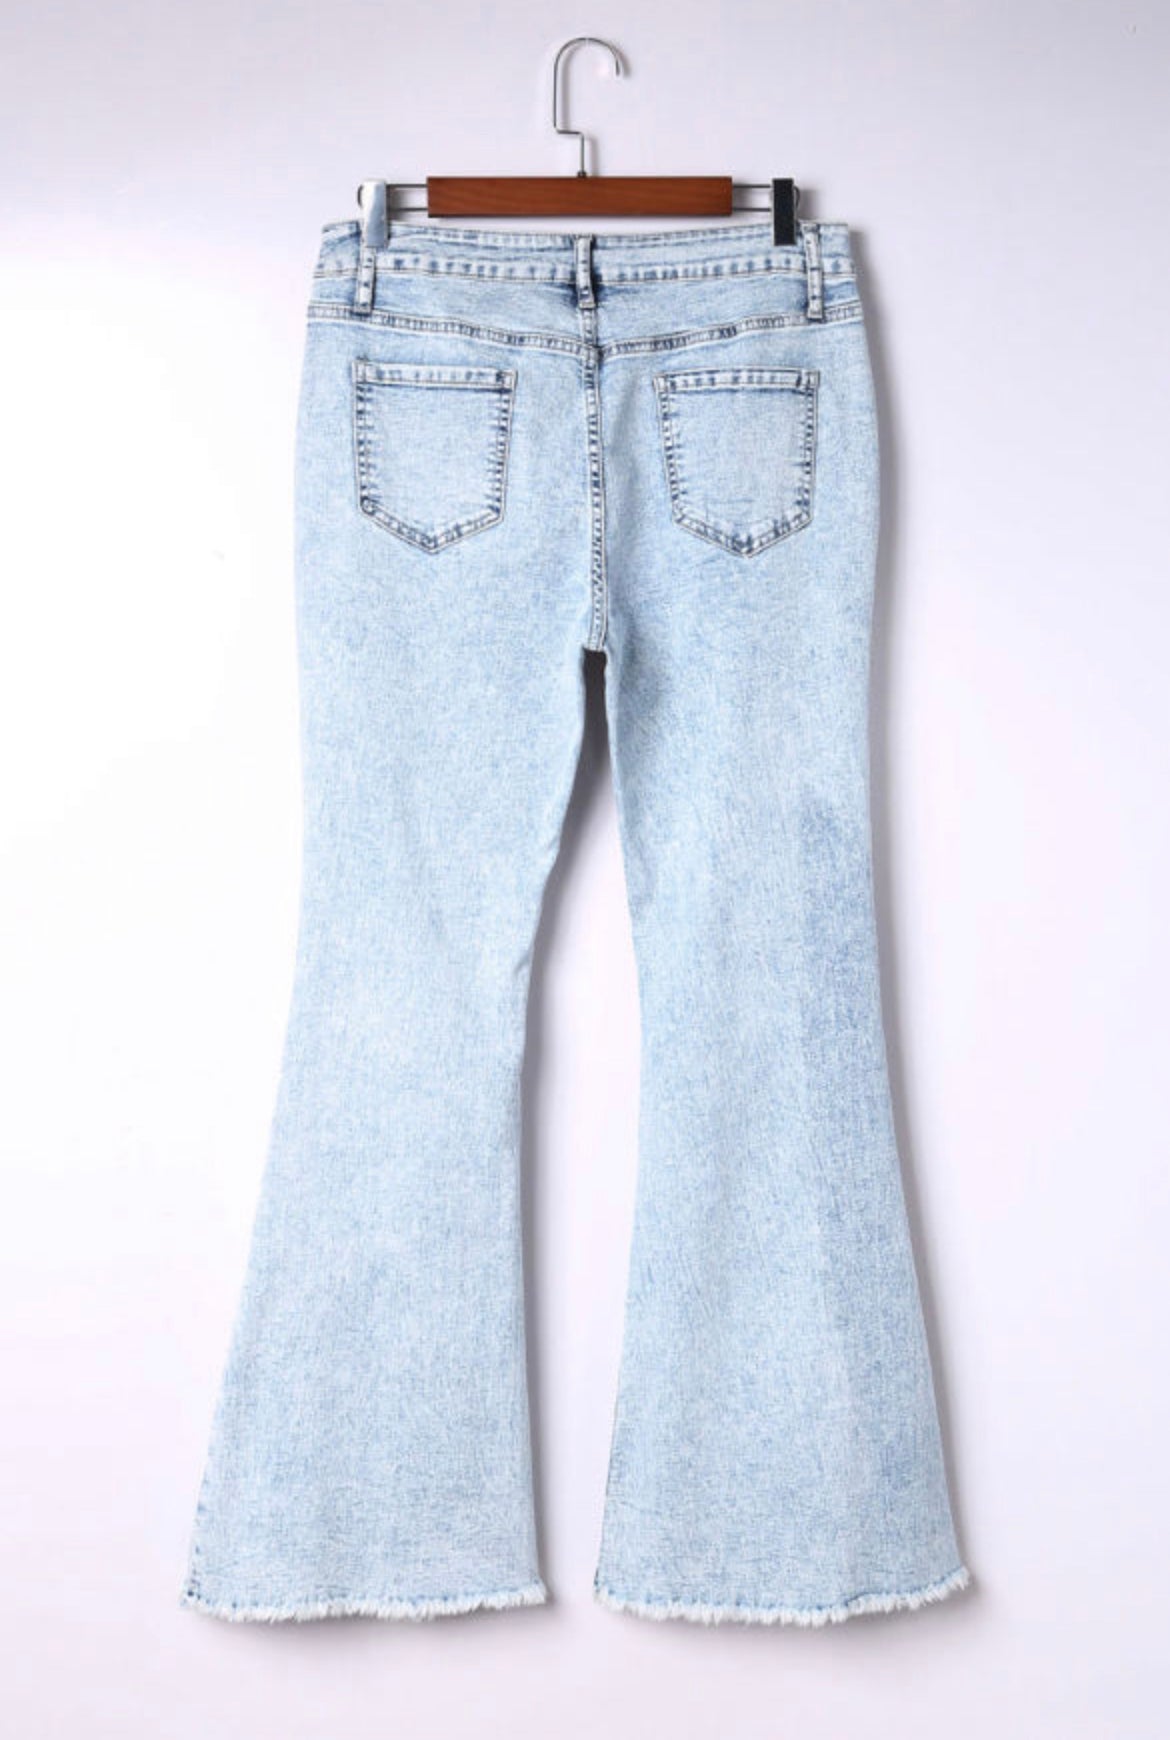 Kayla Jeans